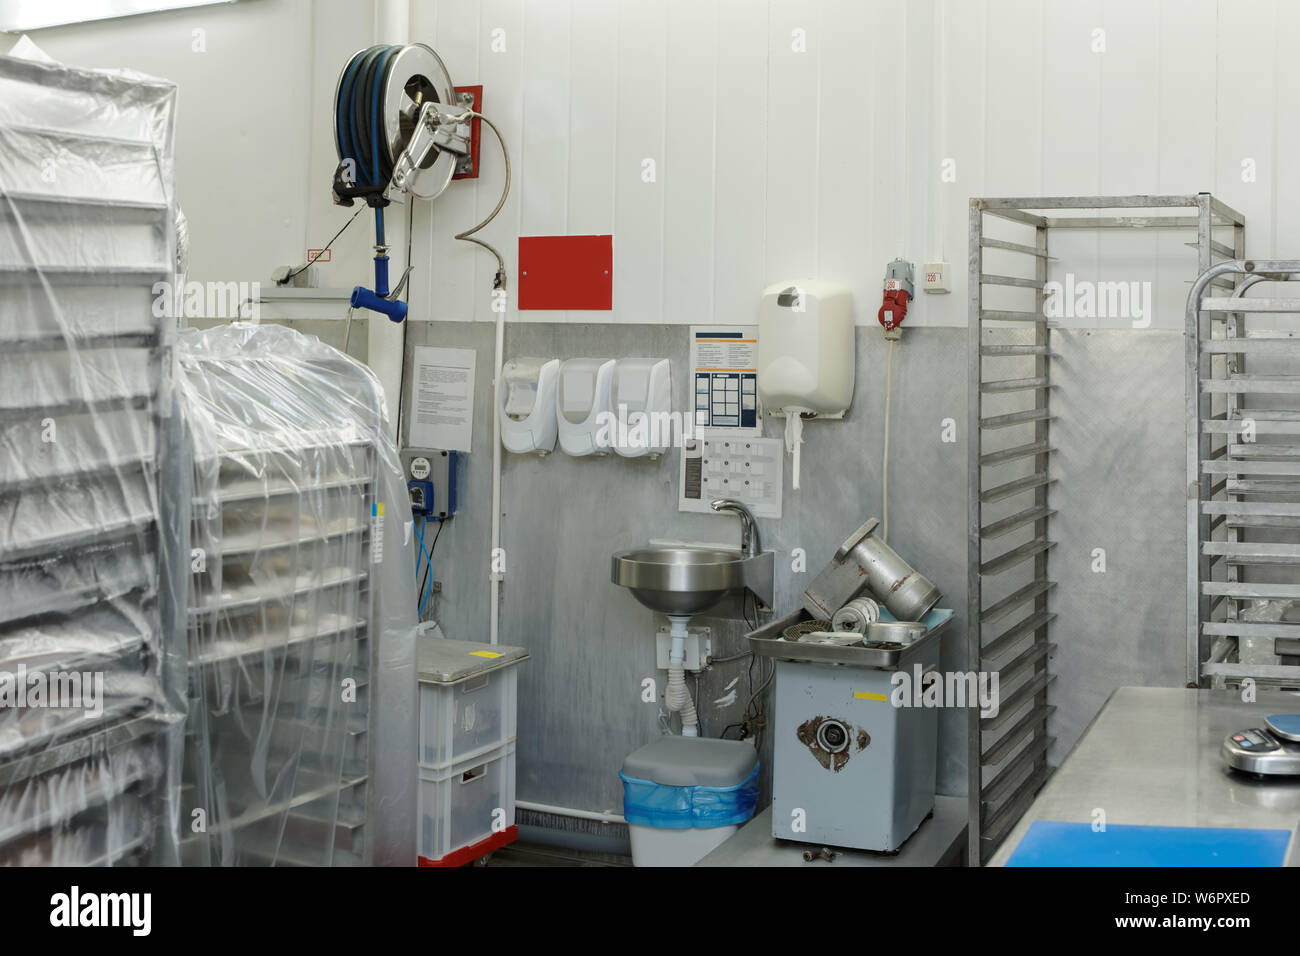 Food processing Anlagen Lagerraum mit Hordenwagen und Händewaschen Bereich Stockfoto